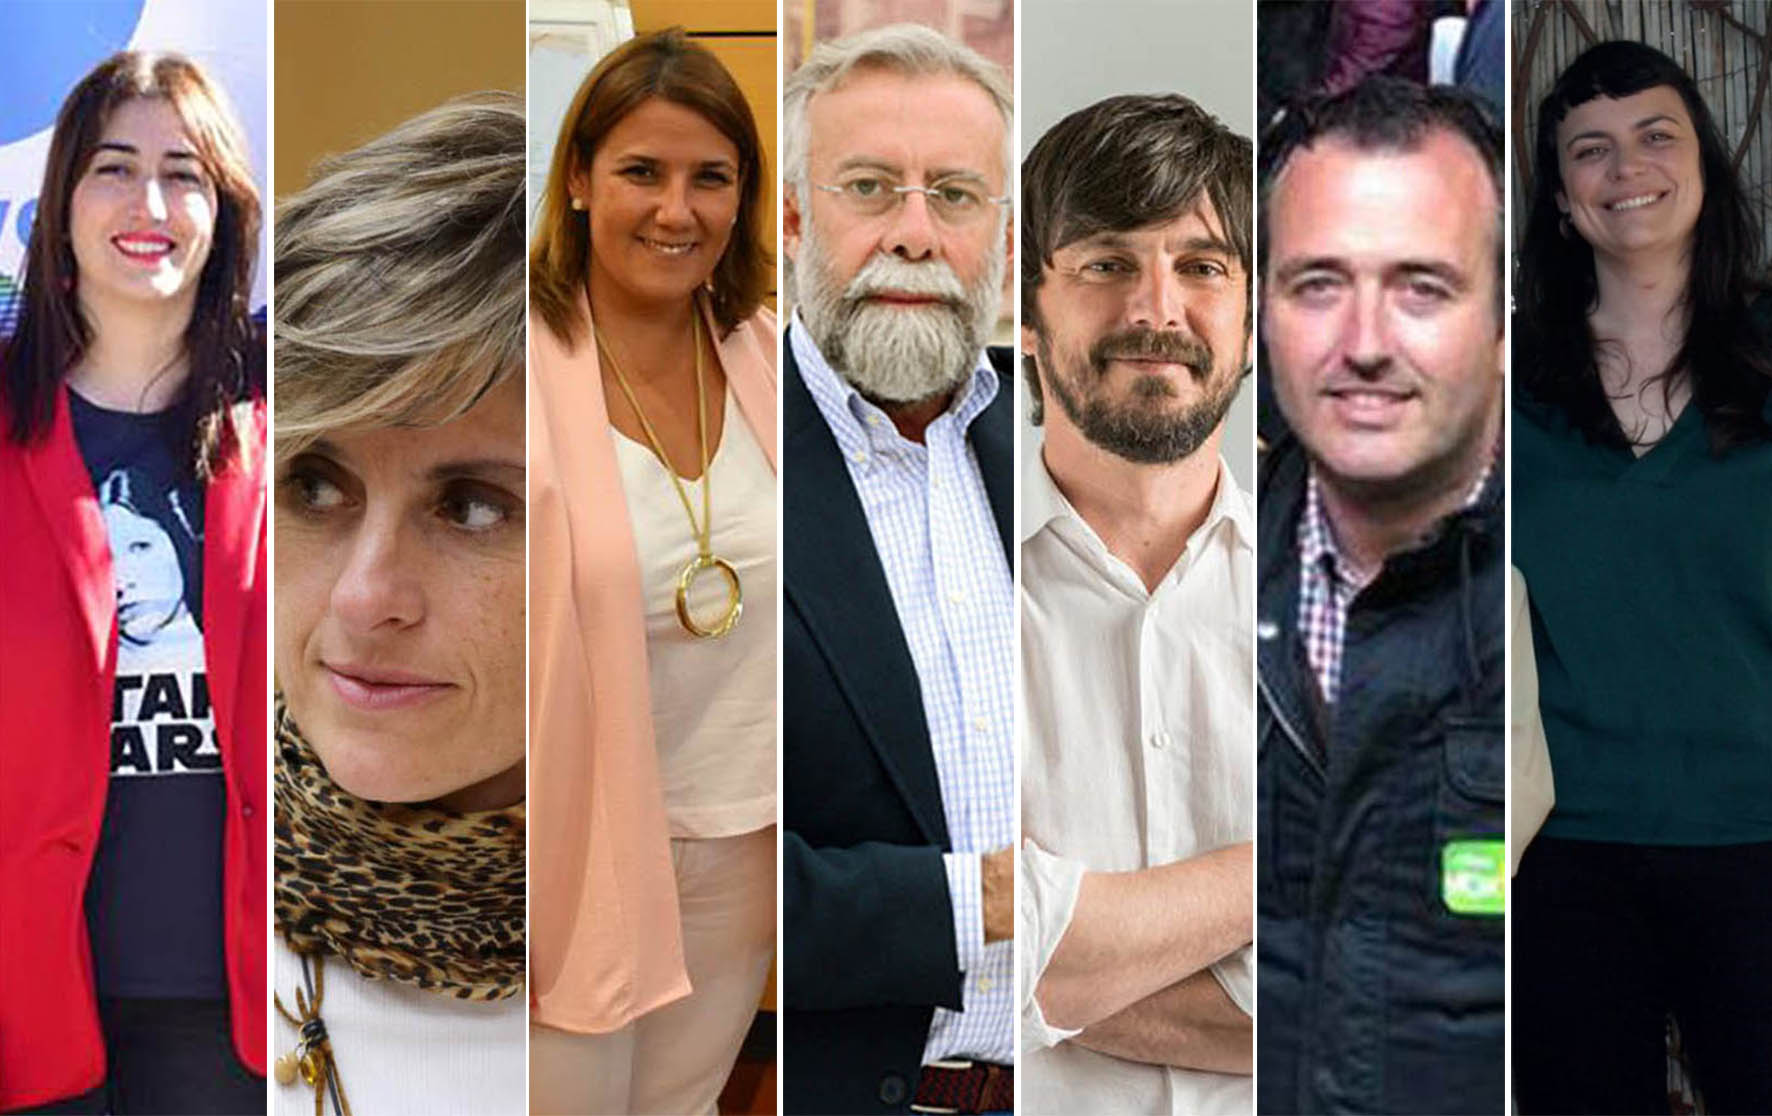 Sonsoles Arnao, Susana Hernández, Tita García Élez, Jaime Ramos, Sergio Ortiz, David Moreno y Eva Martínez.